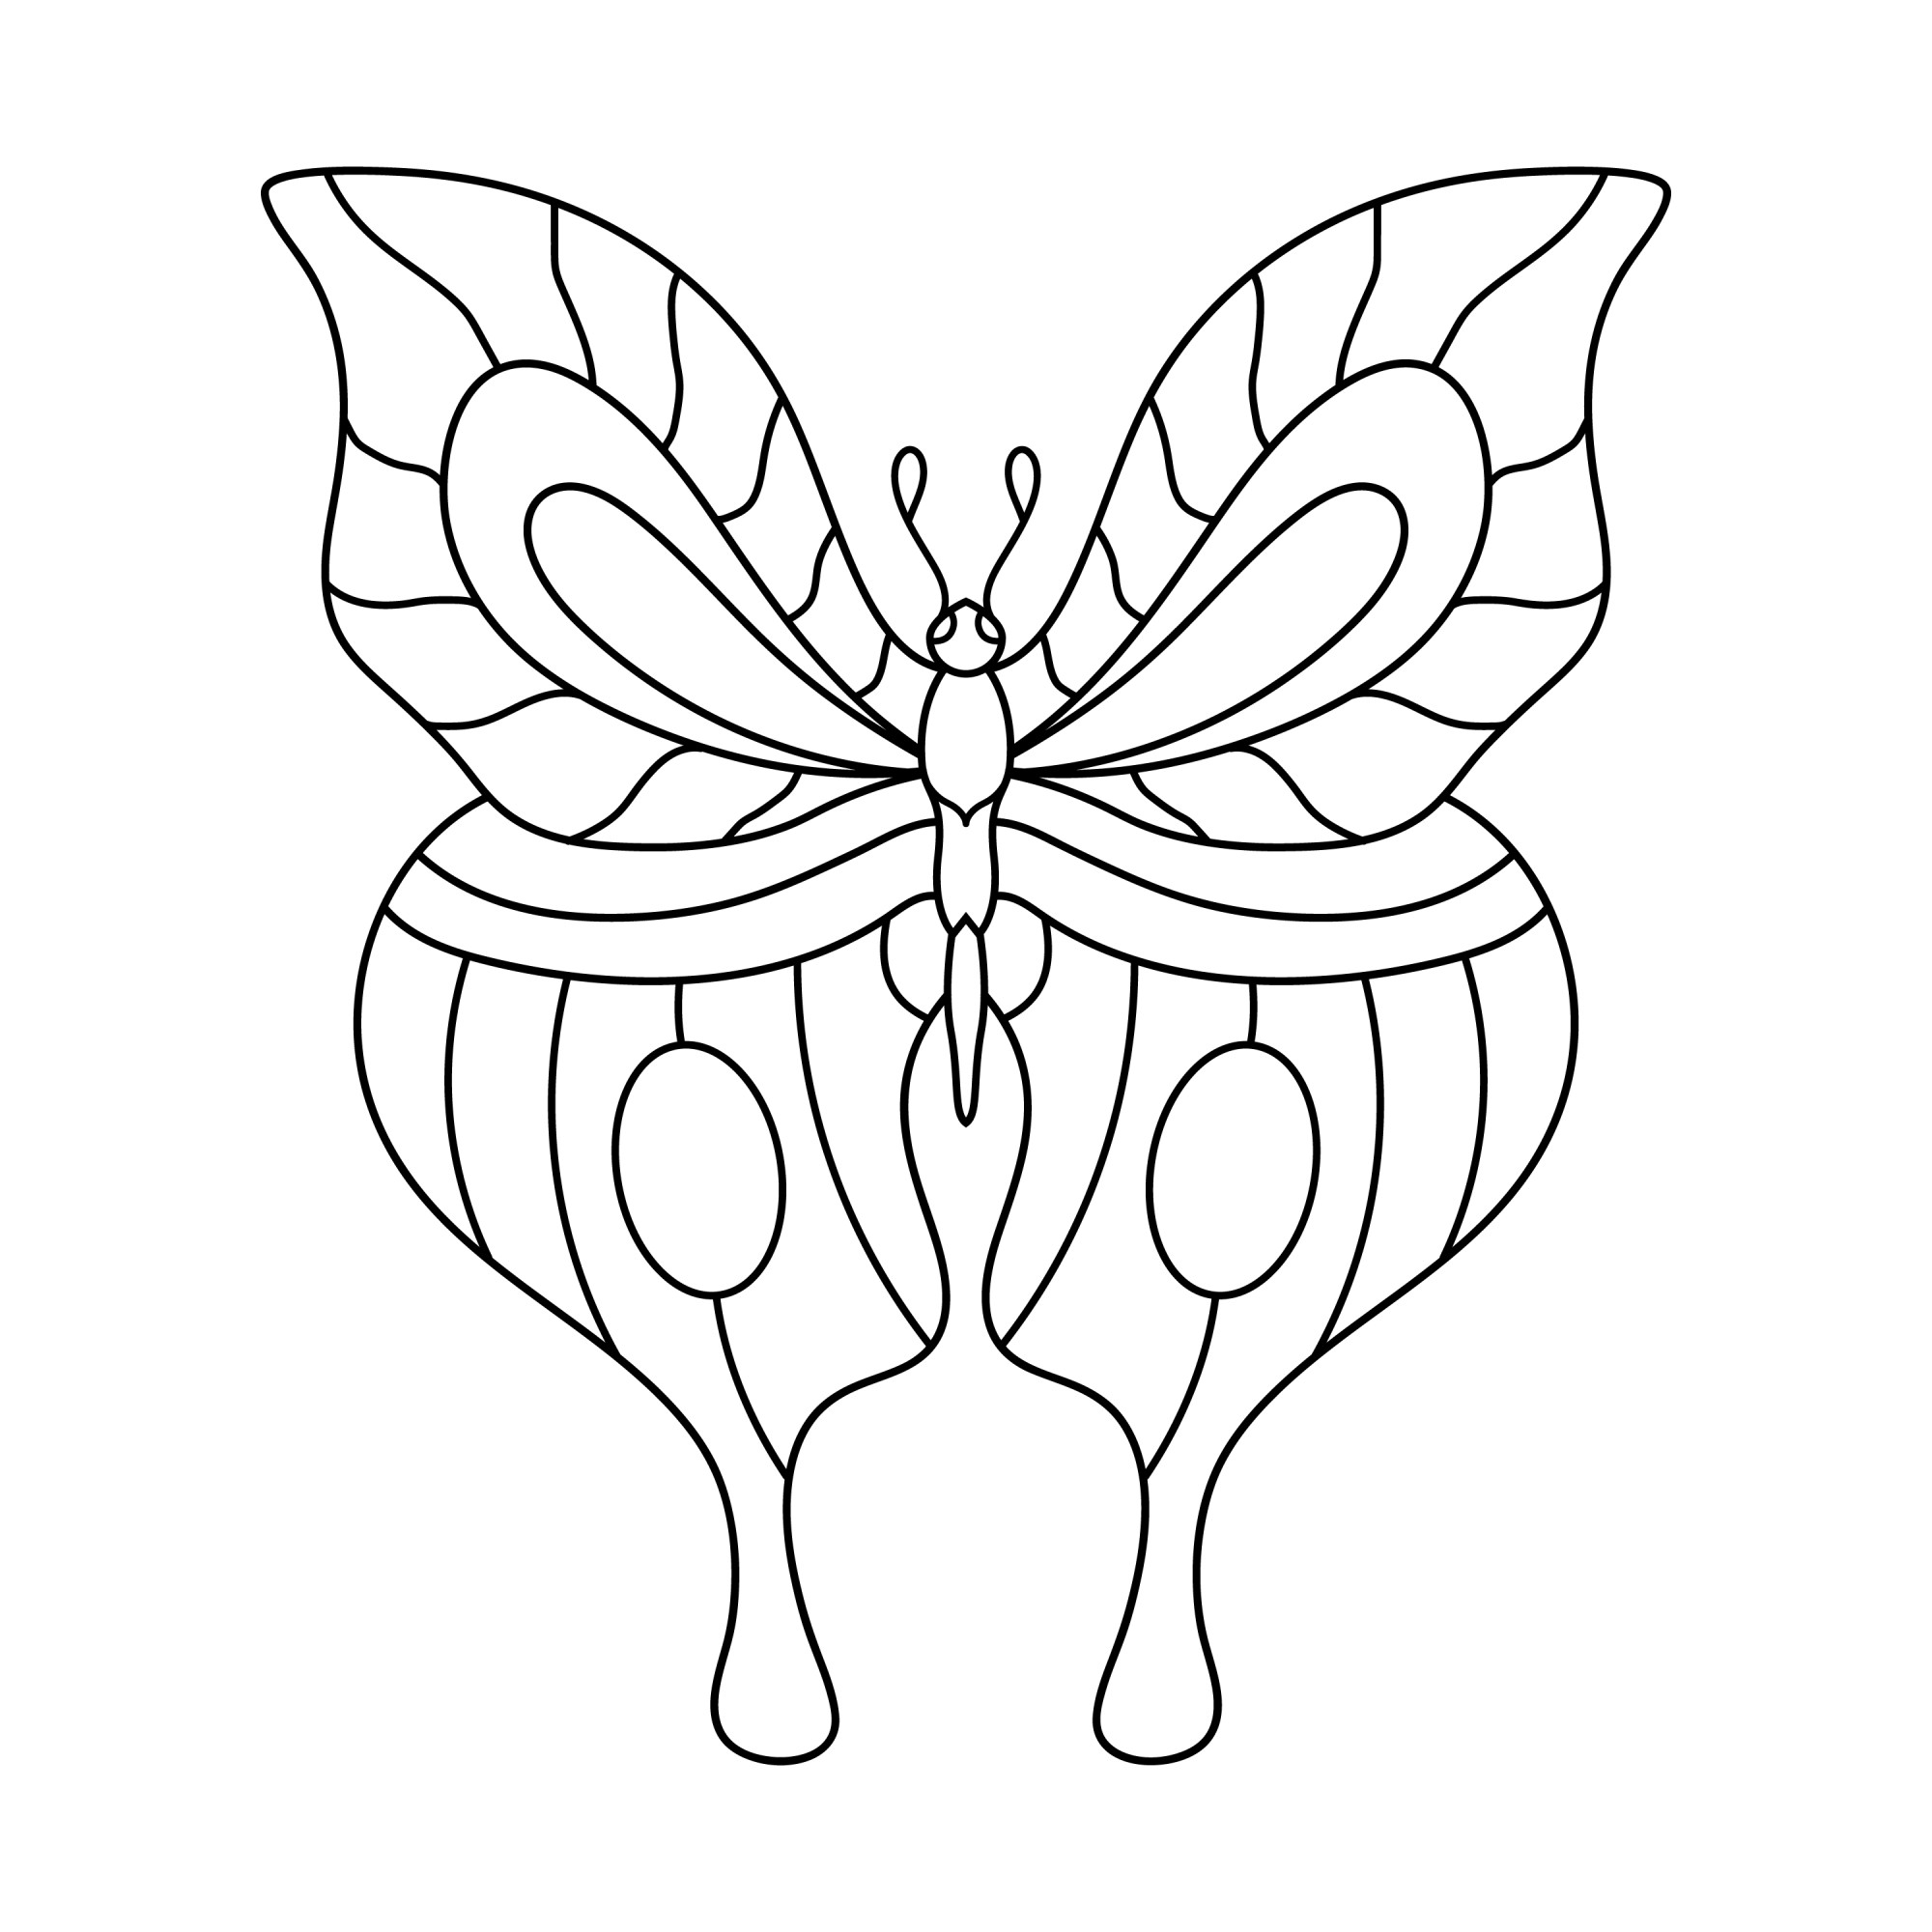 Раскраска для детей: бабочка с длинными крыльями